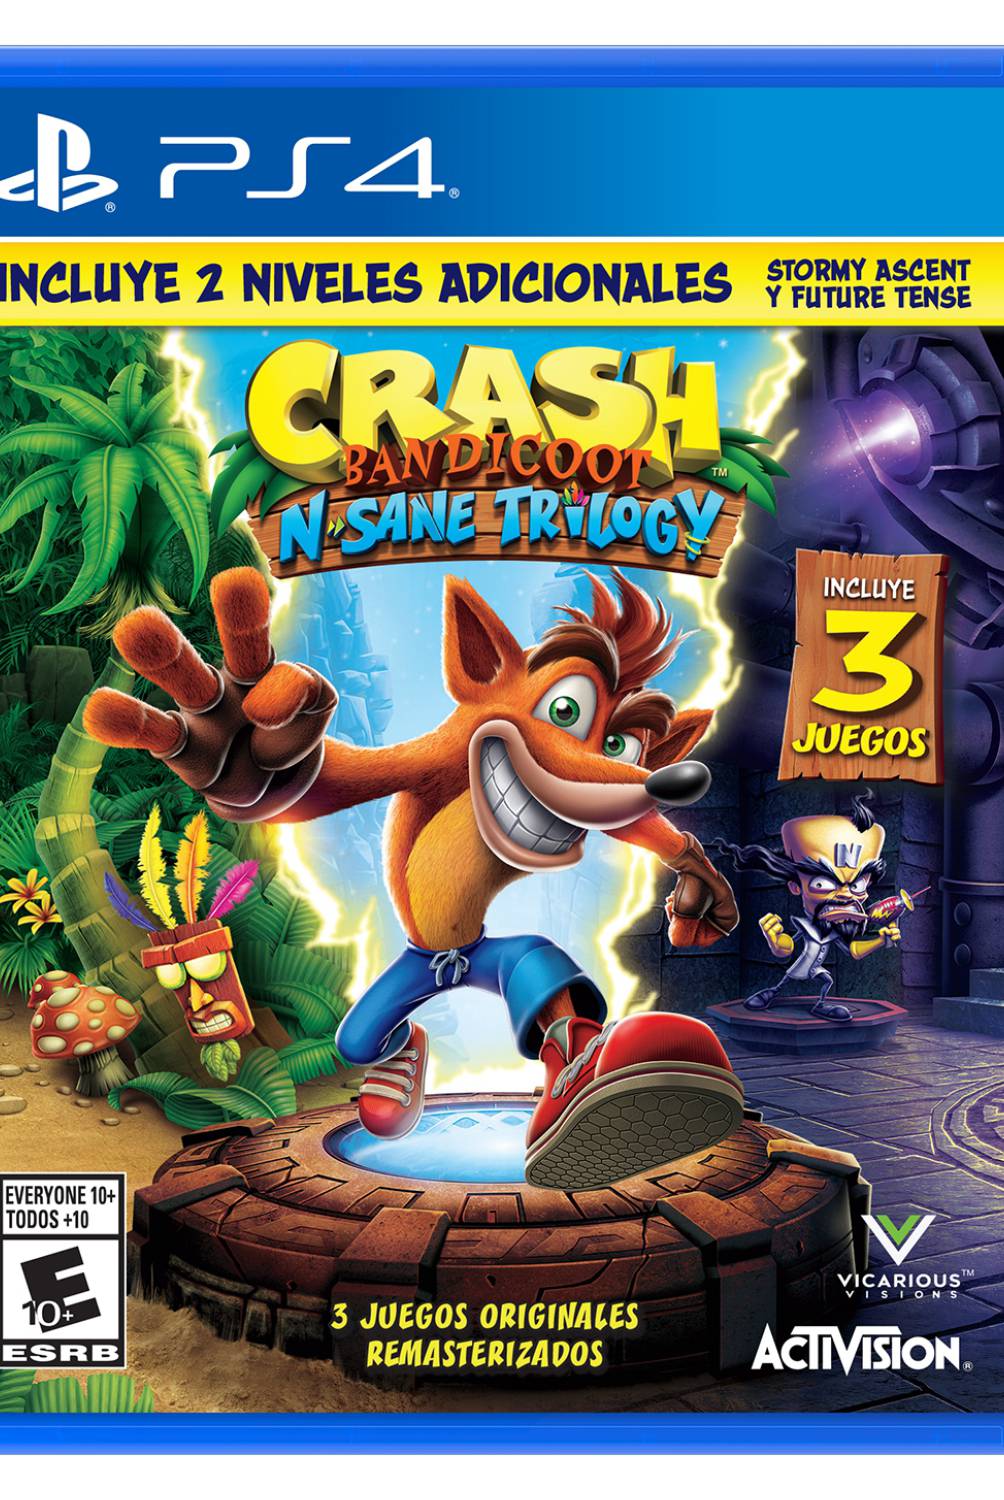 ACTIVISION - Videojuego Crash Bandiccot Playstation 4Ps4 Activision